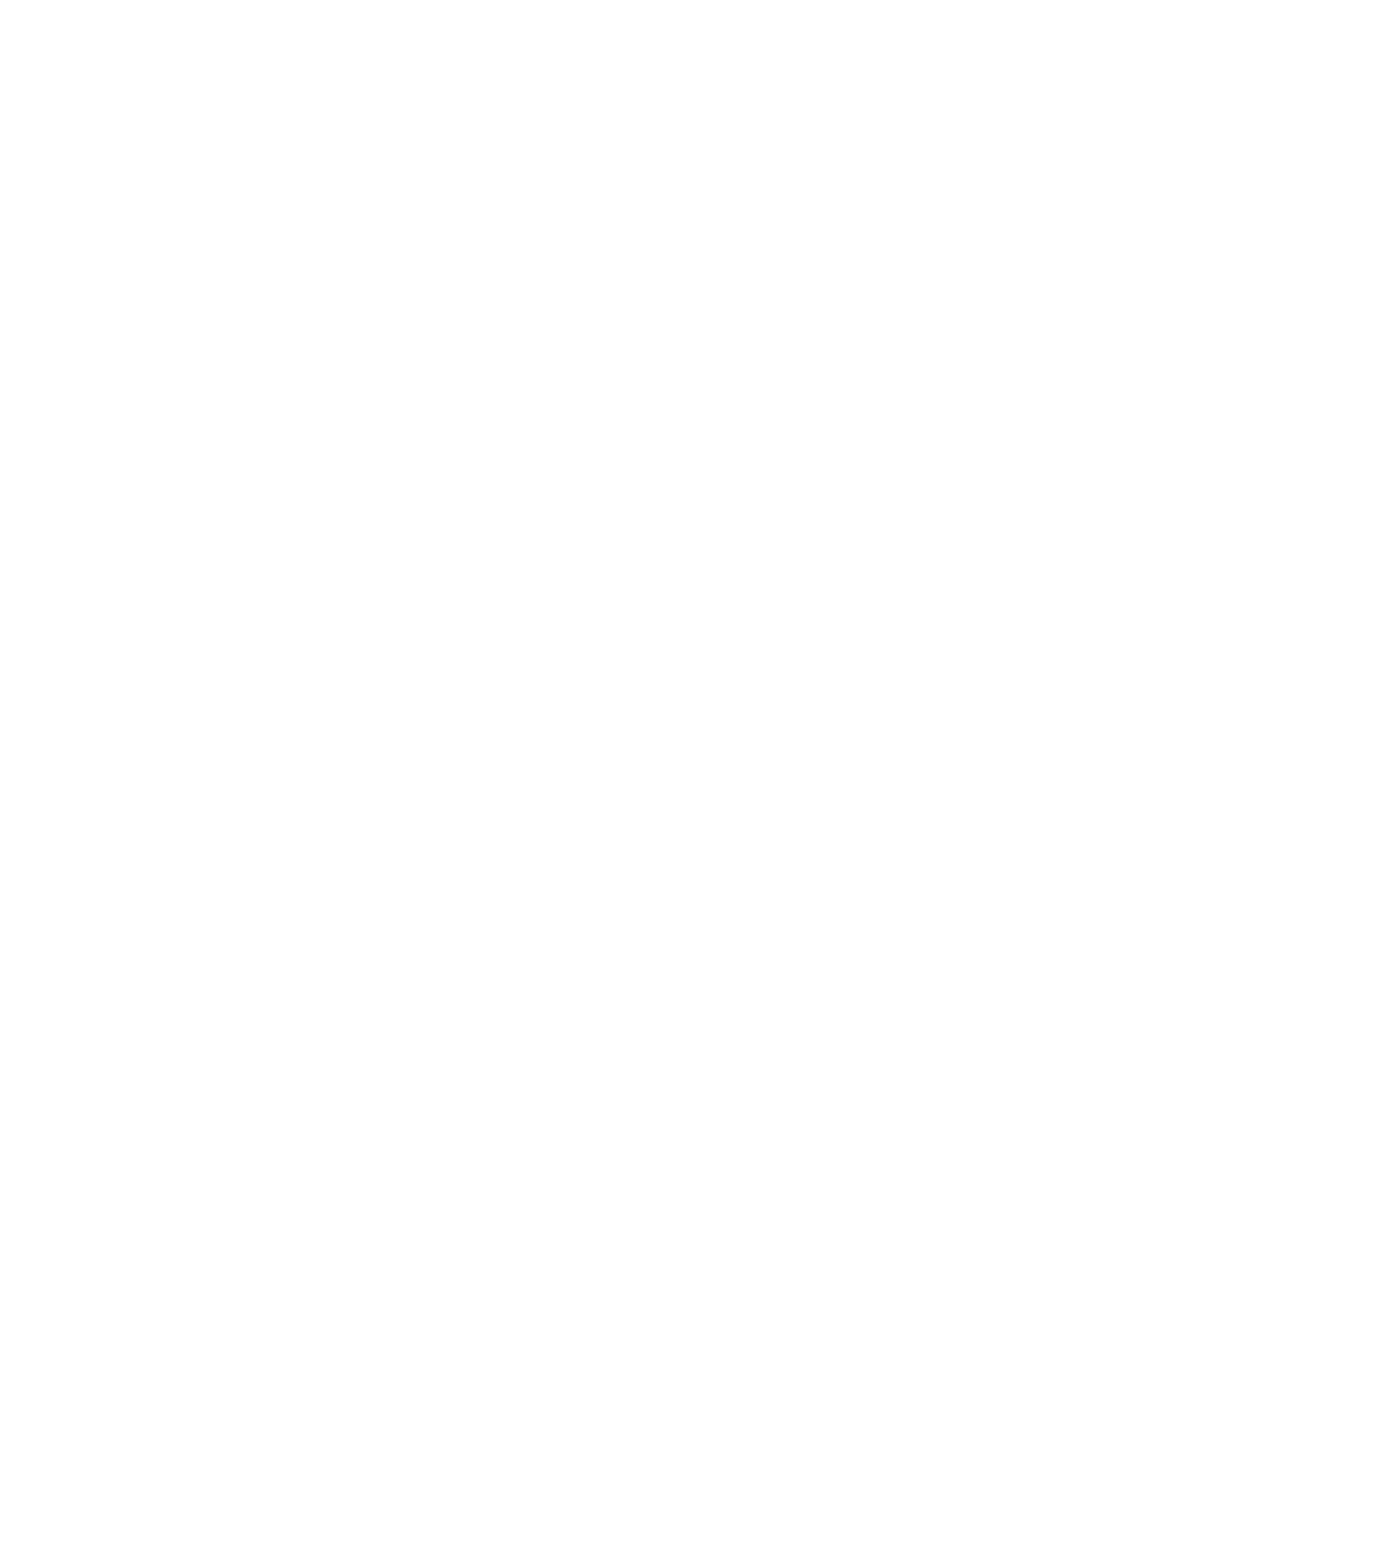 Koppers logo for dark backgrounds (transparent PNG)